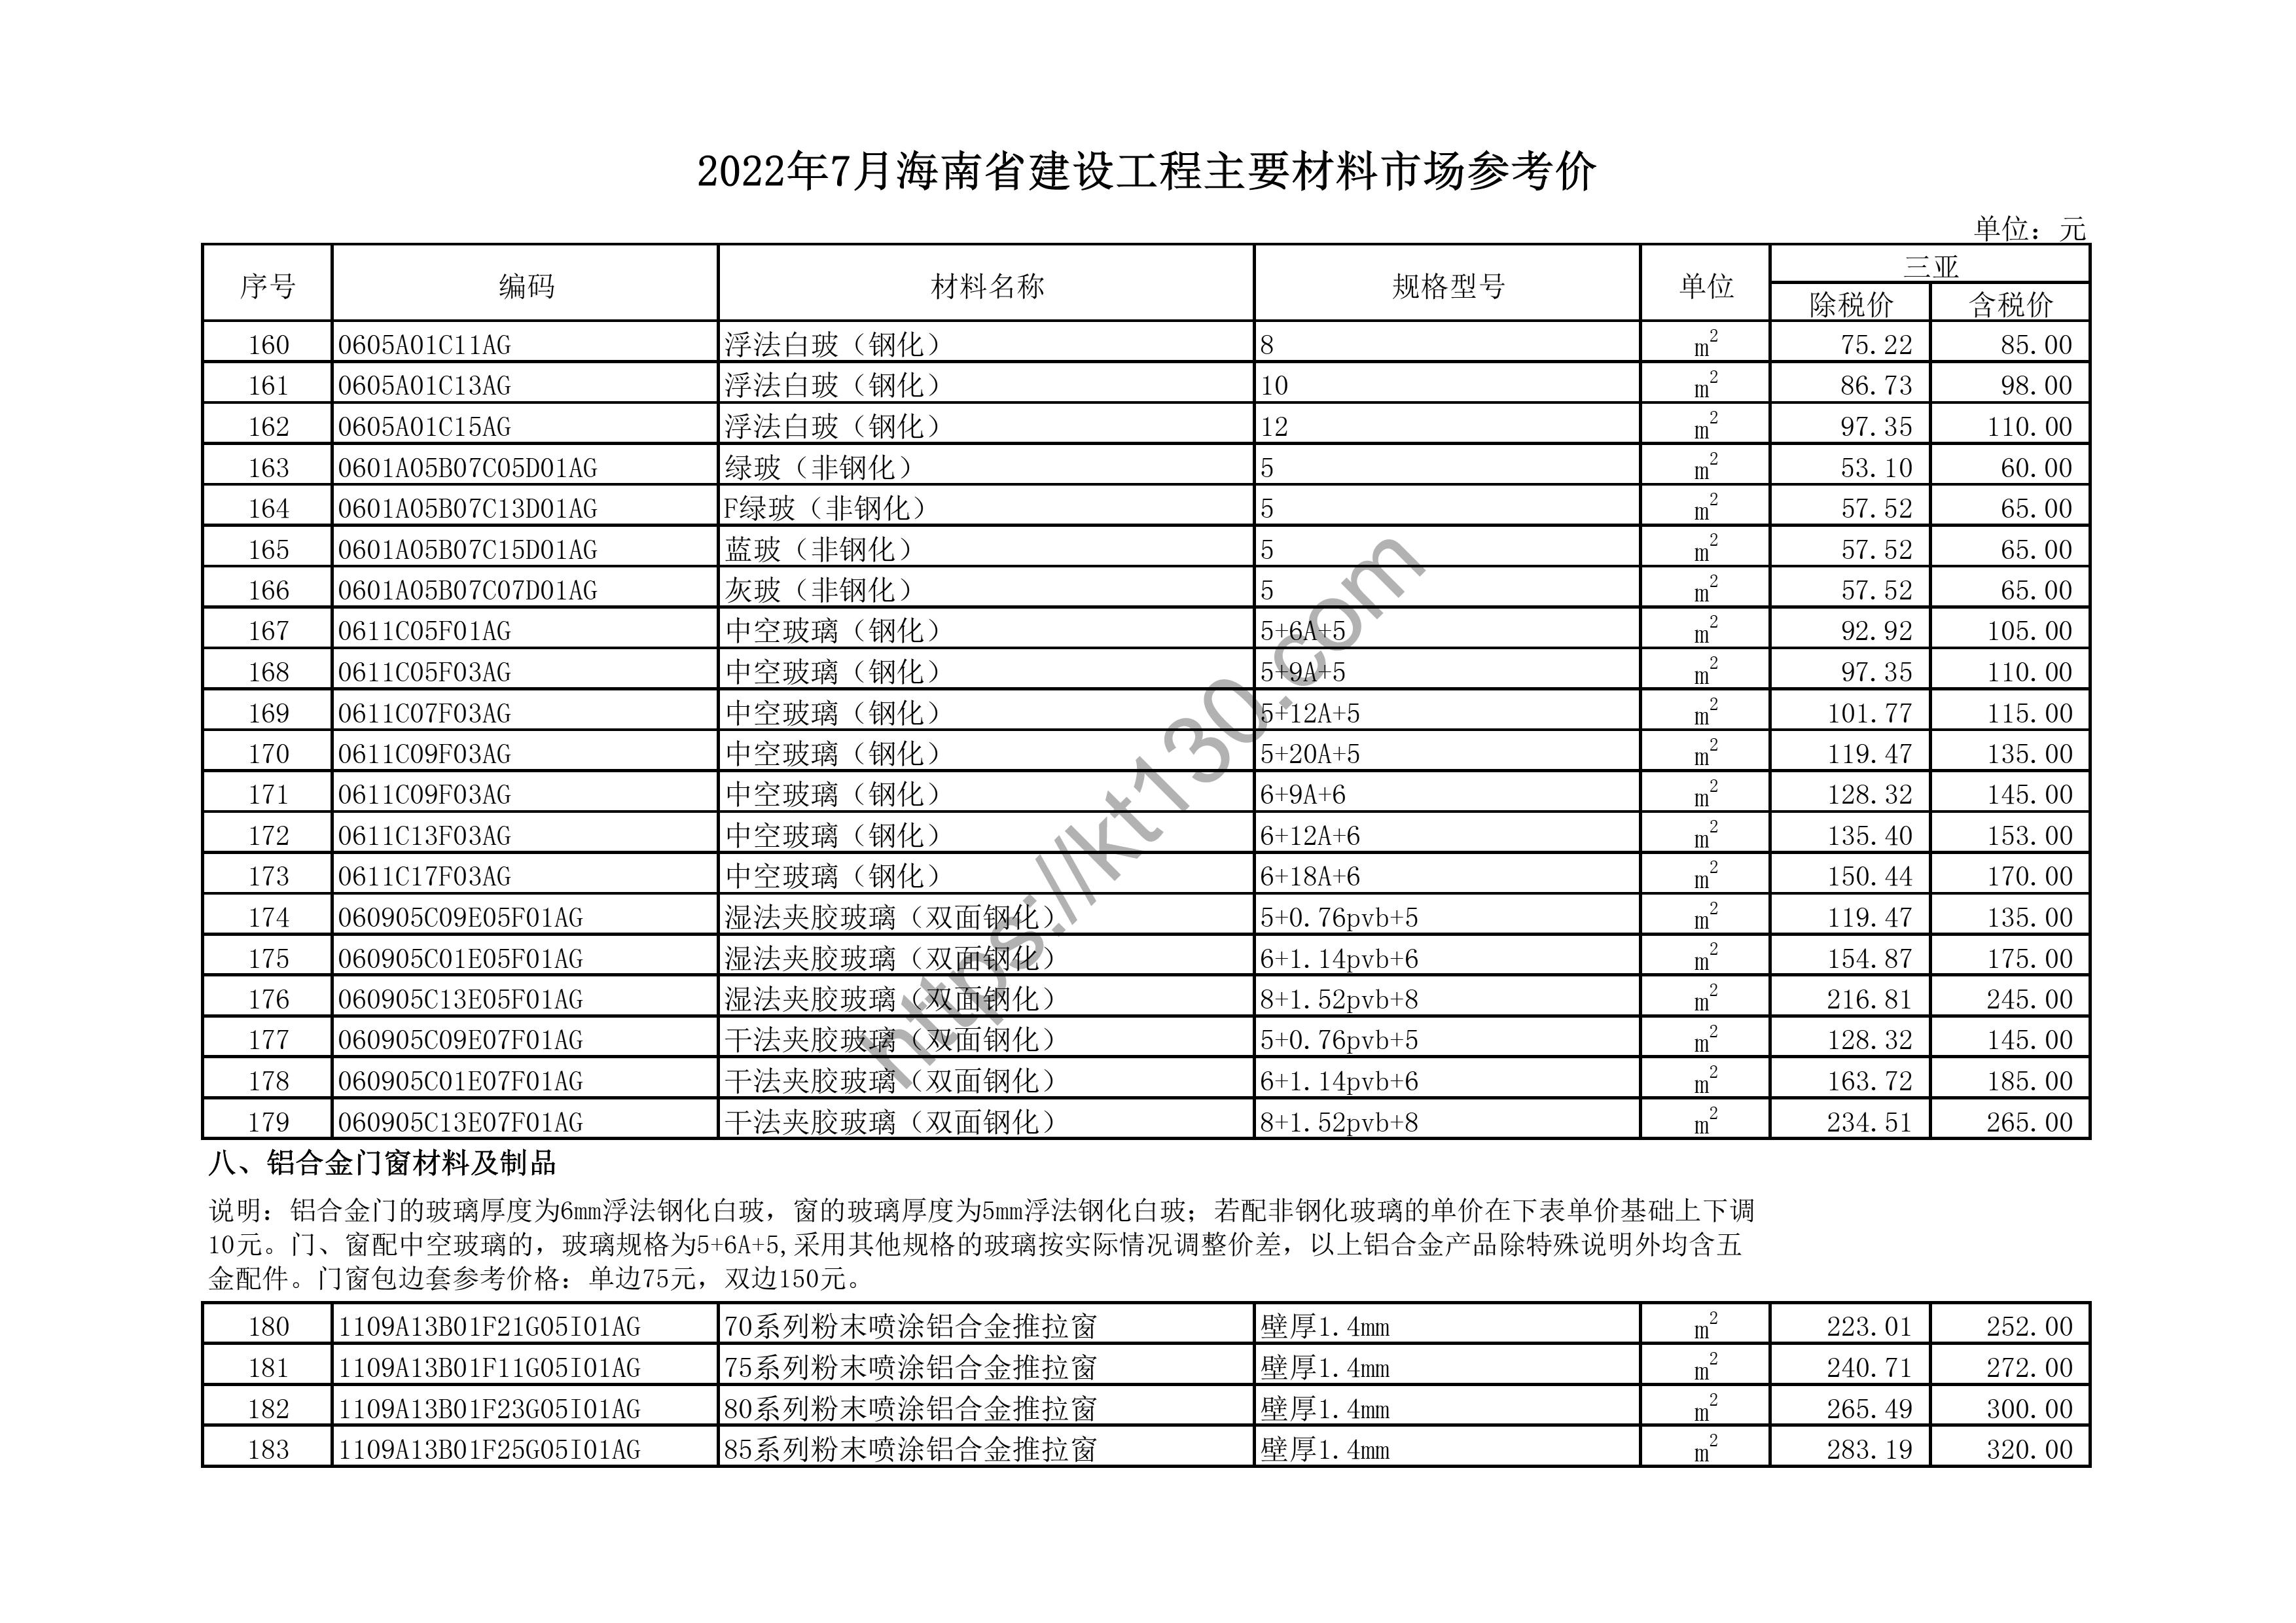 海南省2022年7月建筑材料价_钢化玻璃_44755